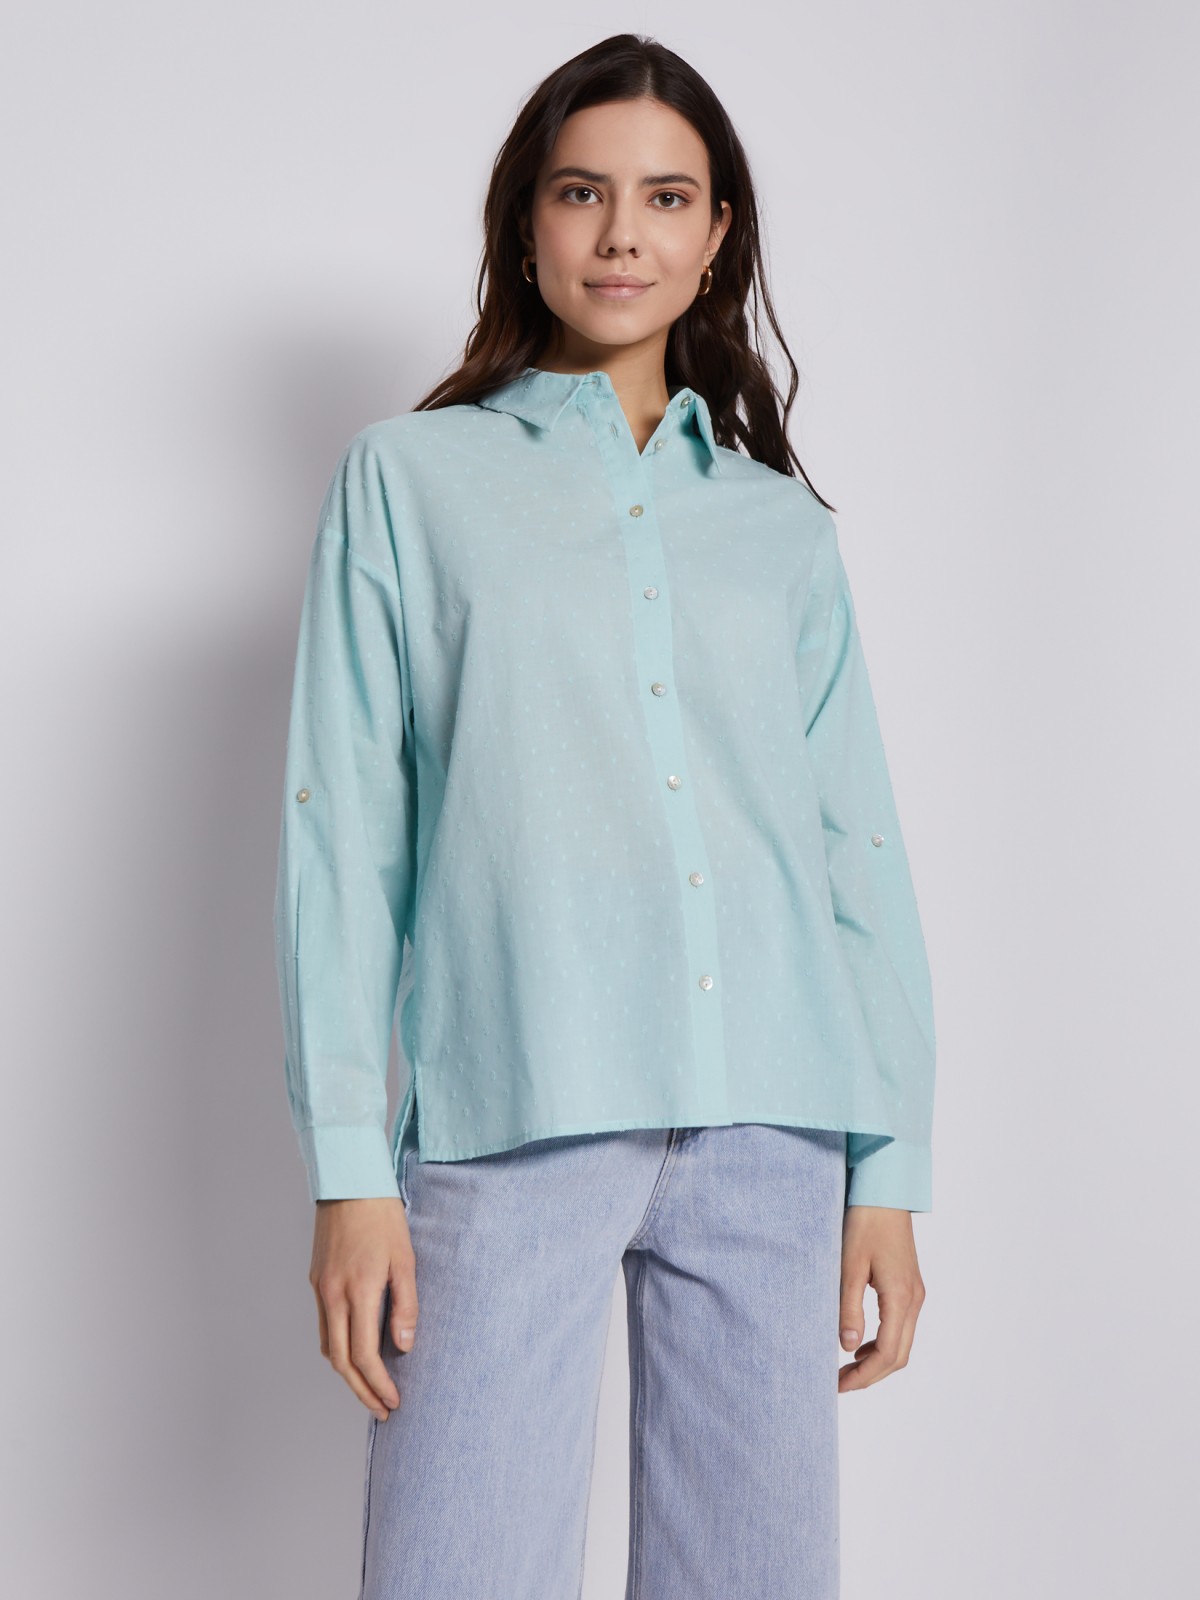 Рубашка из хлопка с подхватами на рукавах zolla 023211159113, цвет мятный, размер XS - фото 5